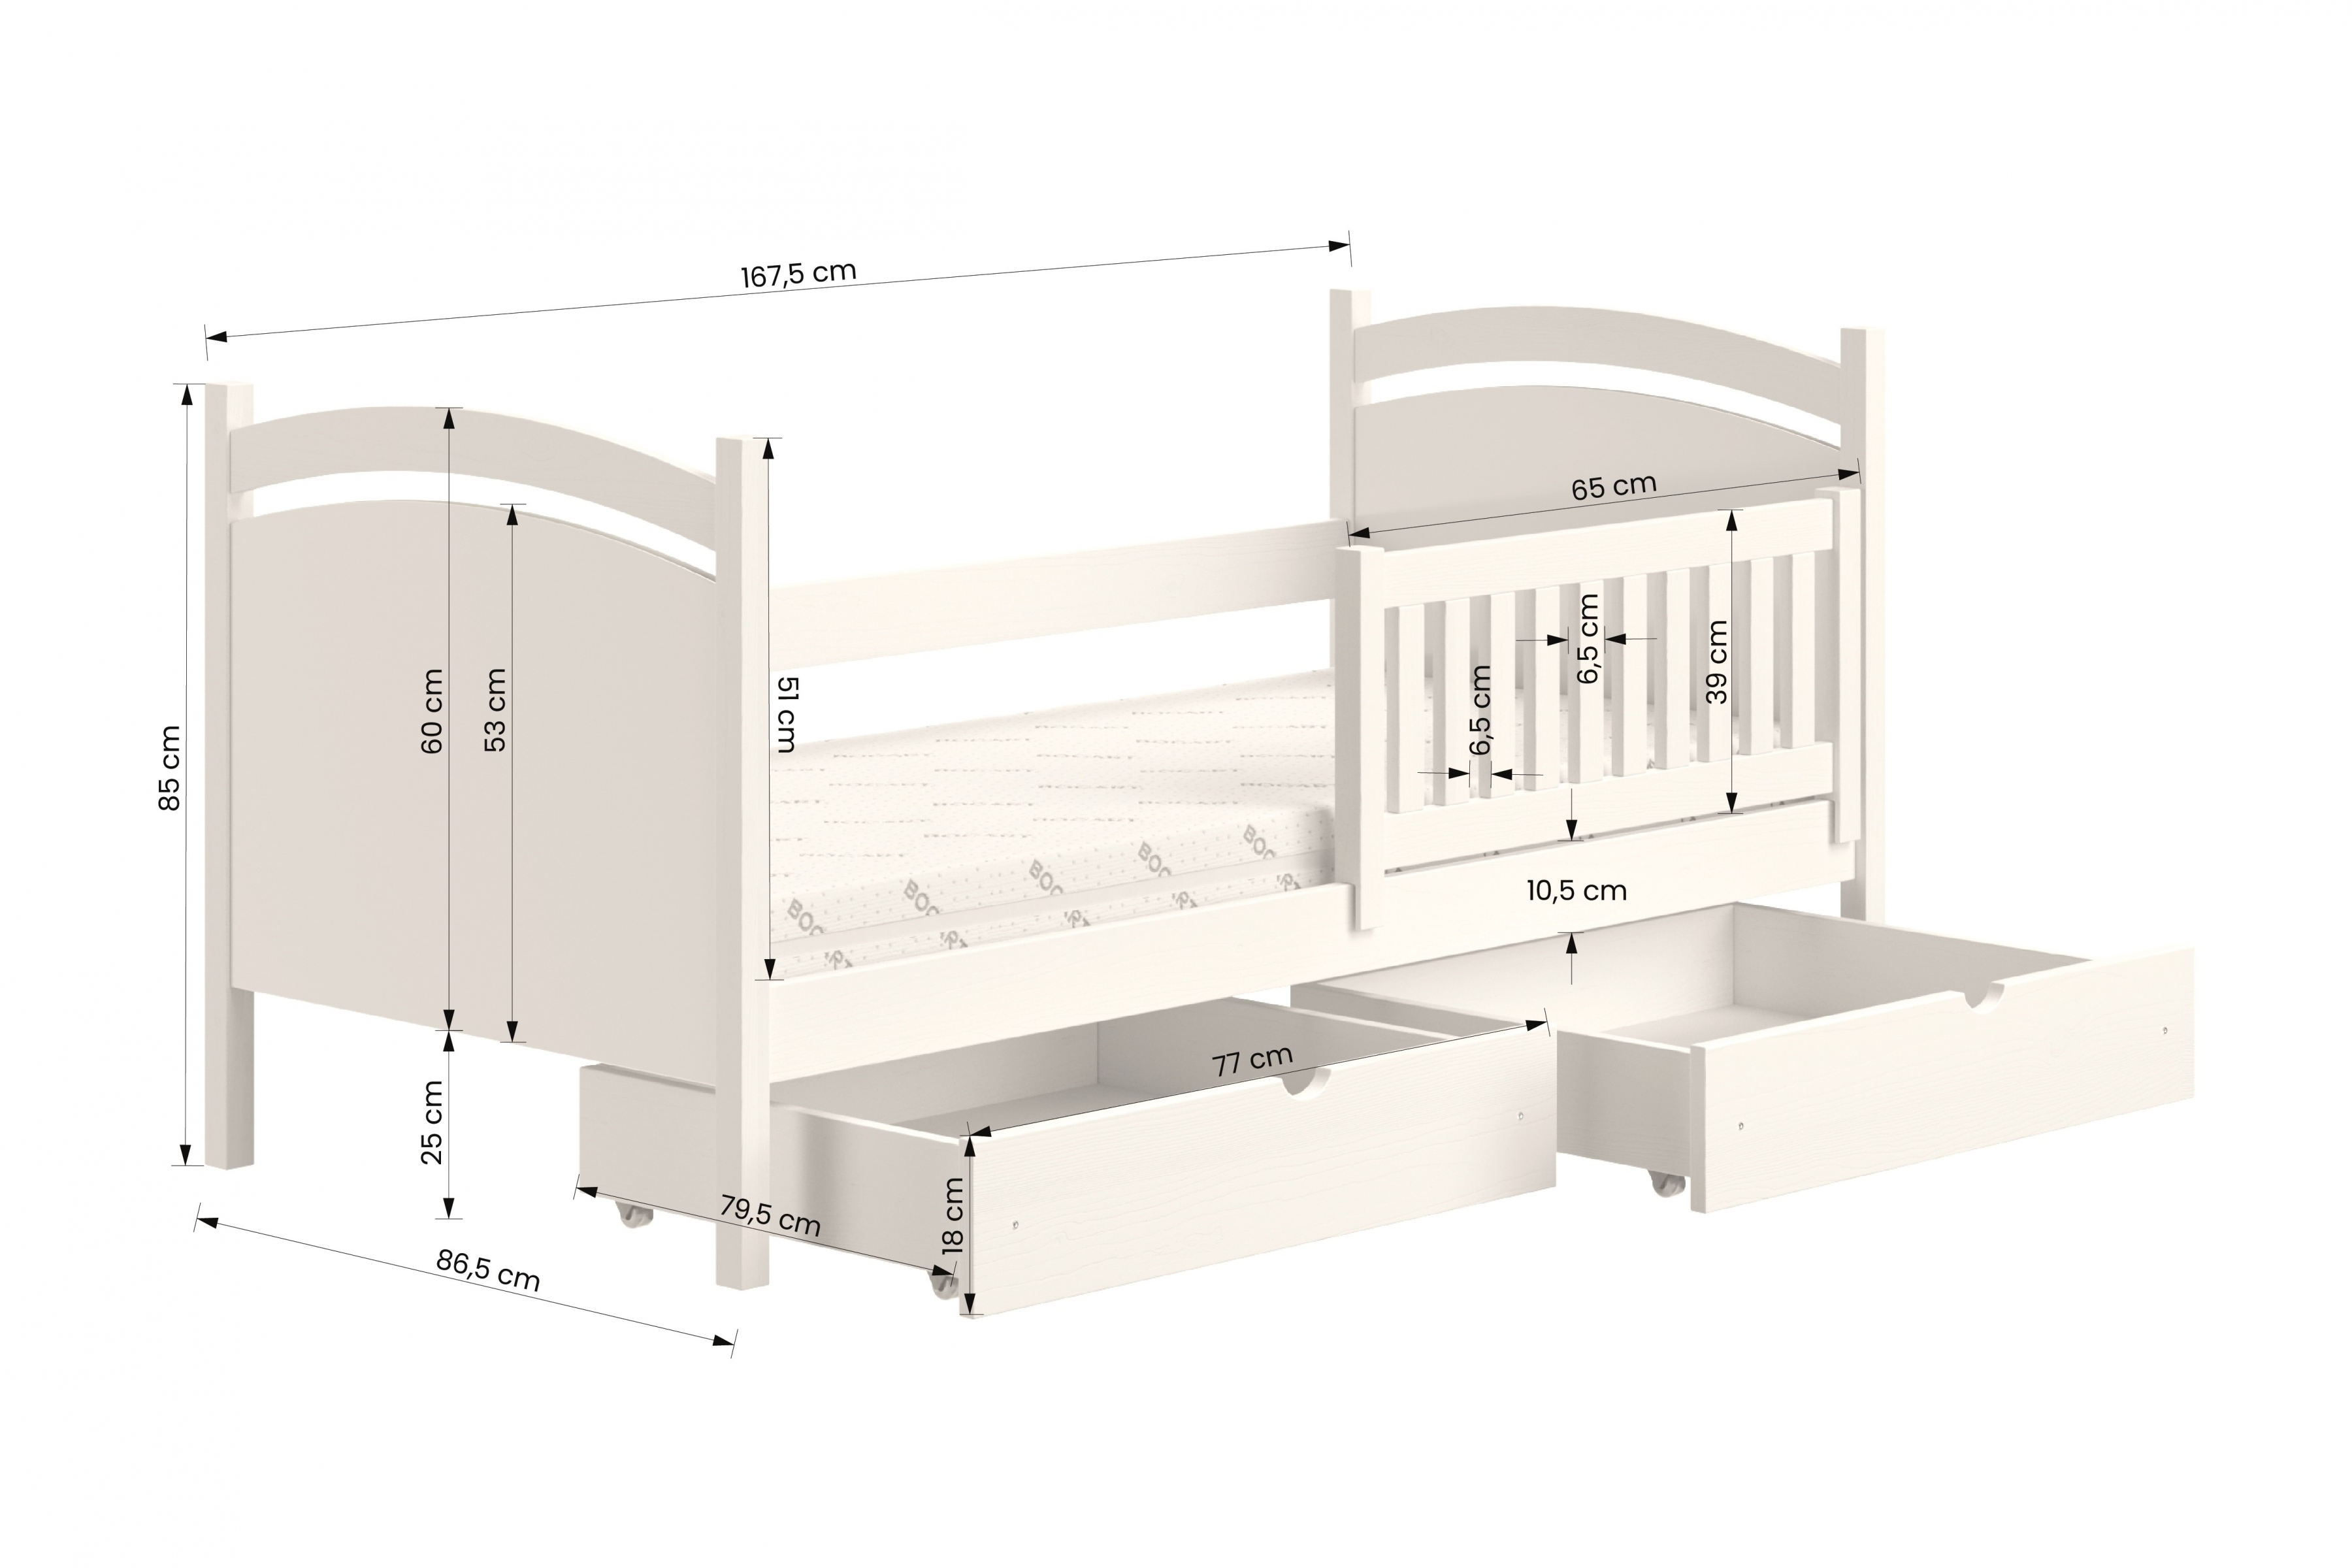 Detská posteľ s tabuľou Amely - Farba Borovica, rozmer 80x160 Posteľ dzieciece z tablica suchoscieralna Amely - Rozmery